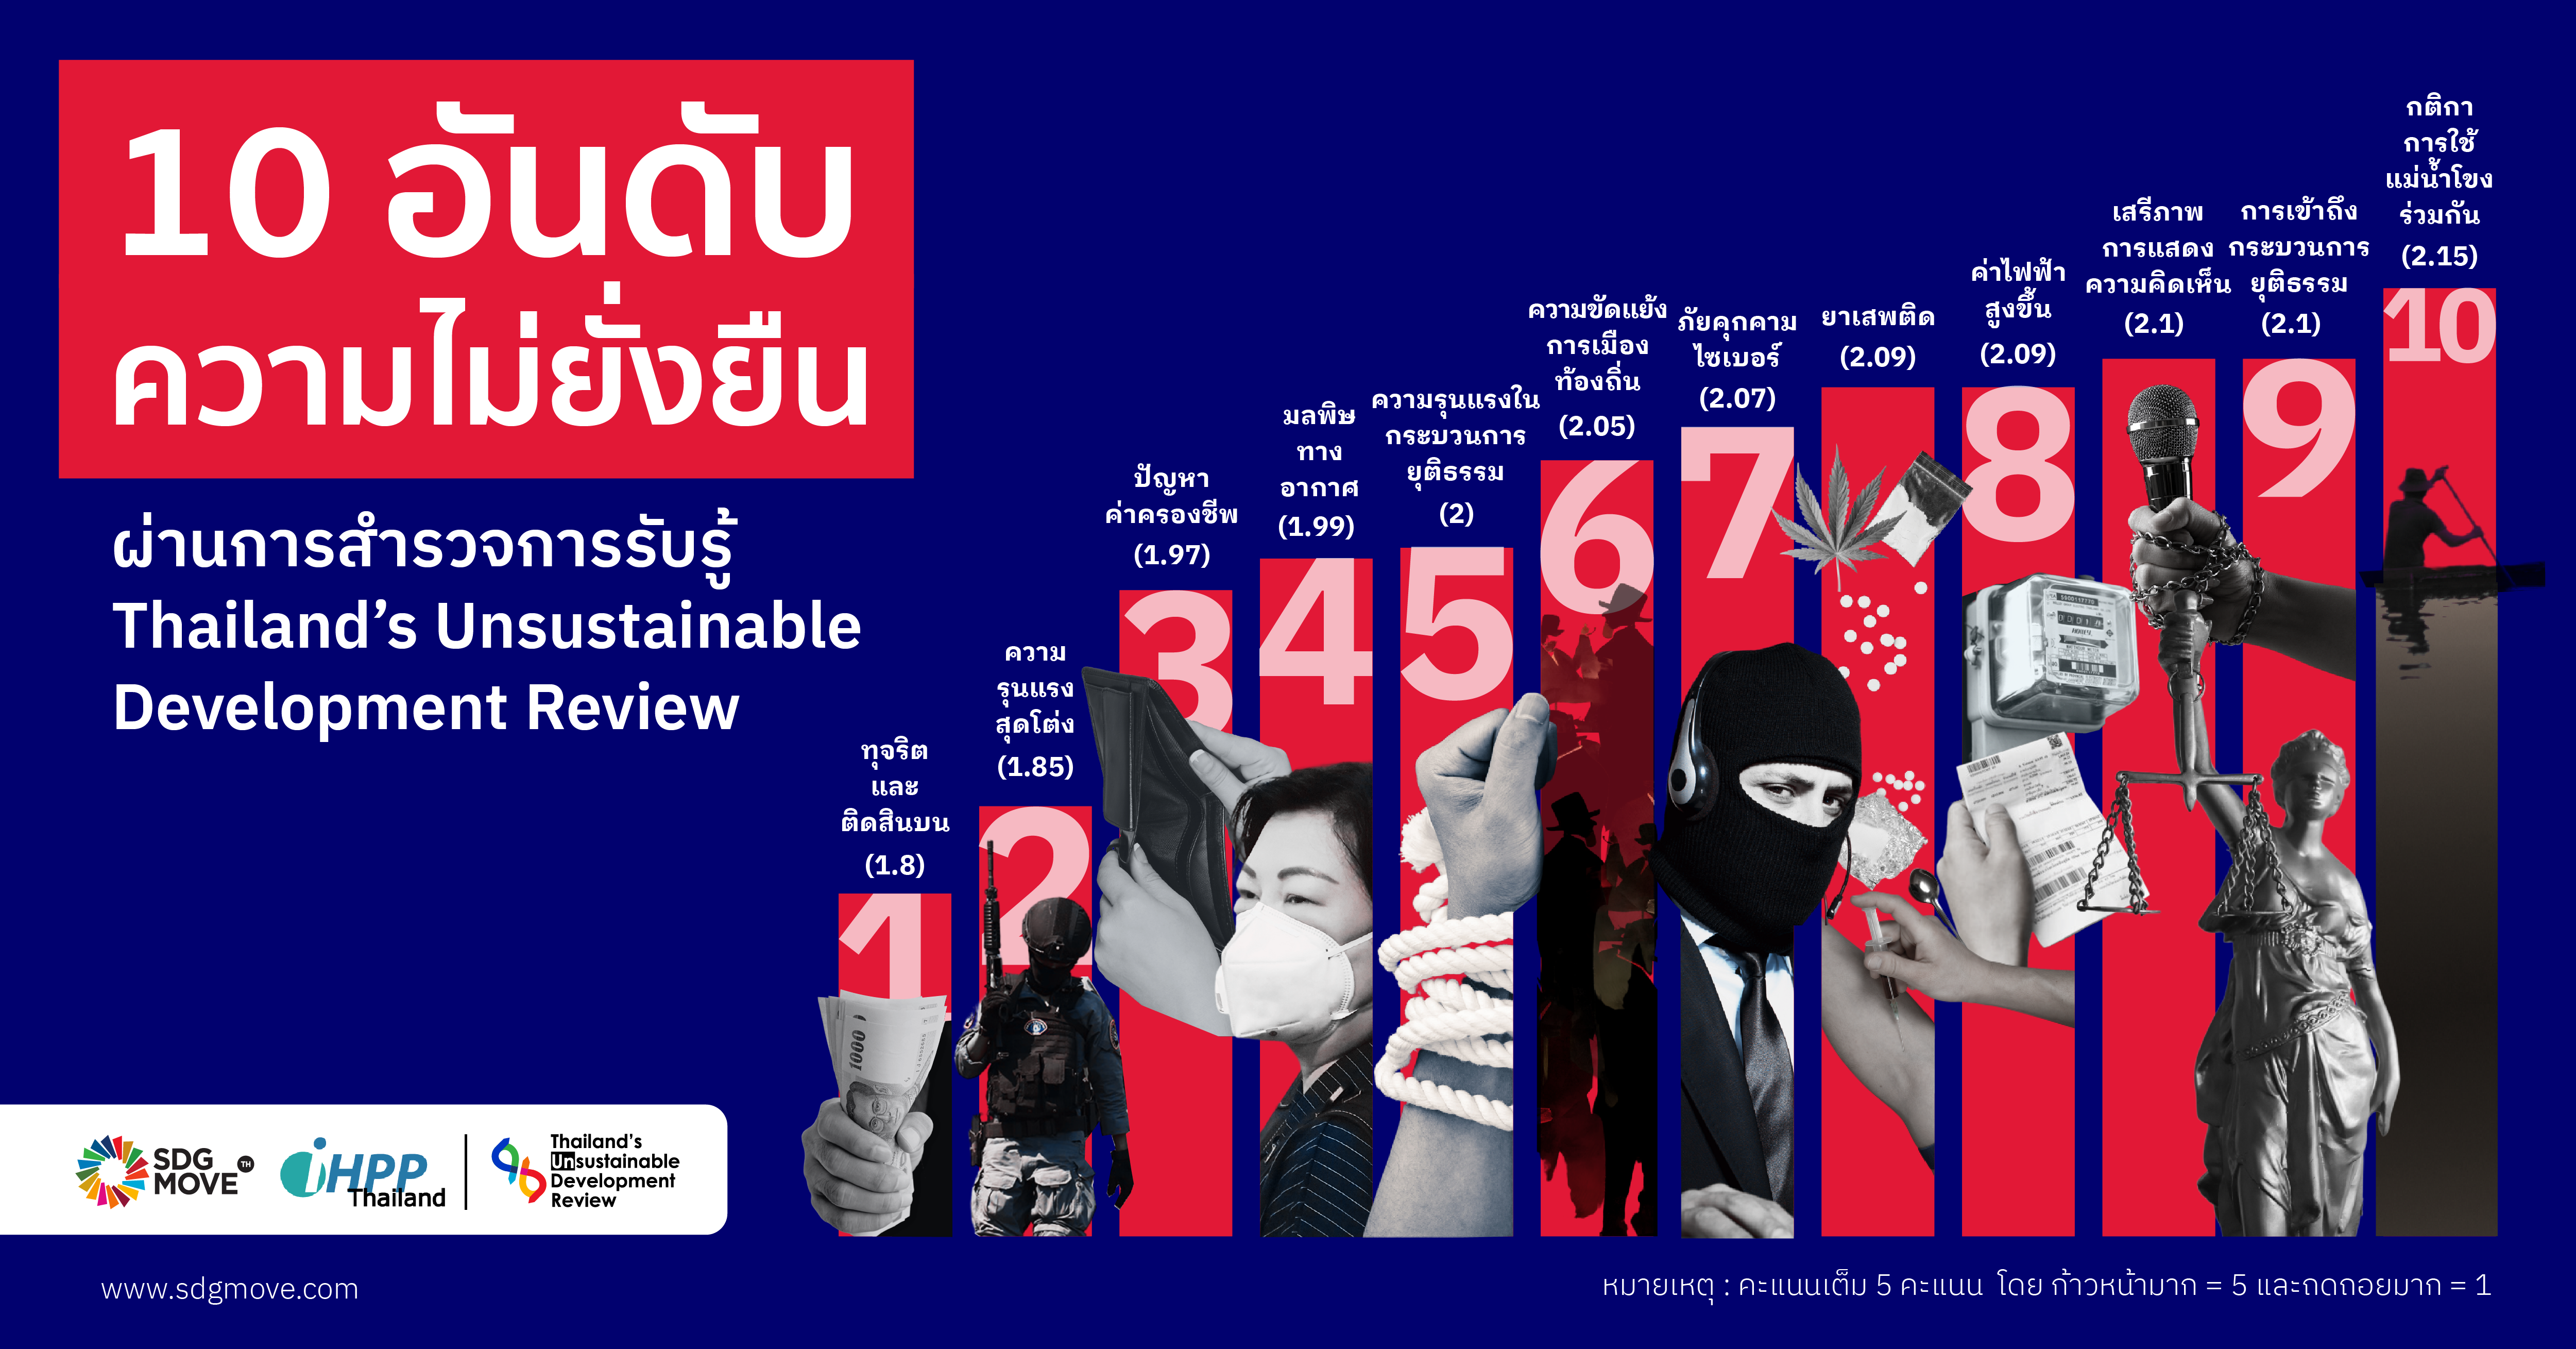 SDG Updates | 10 อันดับ ความไม่ยั่งยืนผ่านการสำรวจการรับรู้ Thailand’s Unsustainable Development Review – พบเกินครึ่งเป็นประเด็นปัญหาเกี่ยวกับ SDG 16